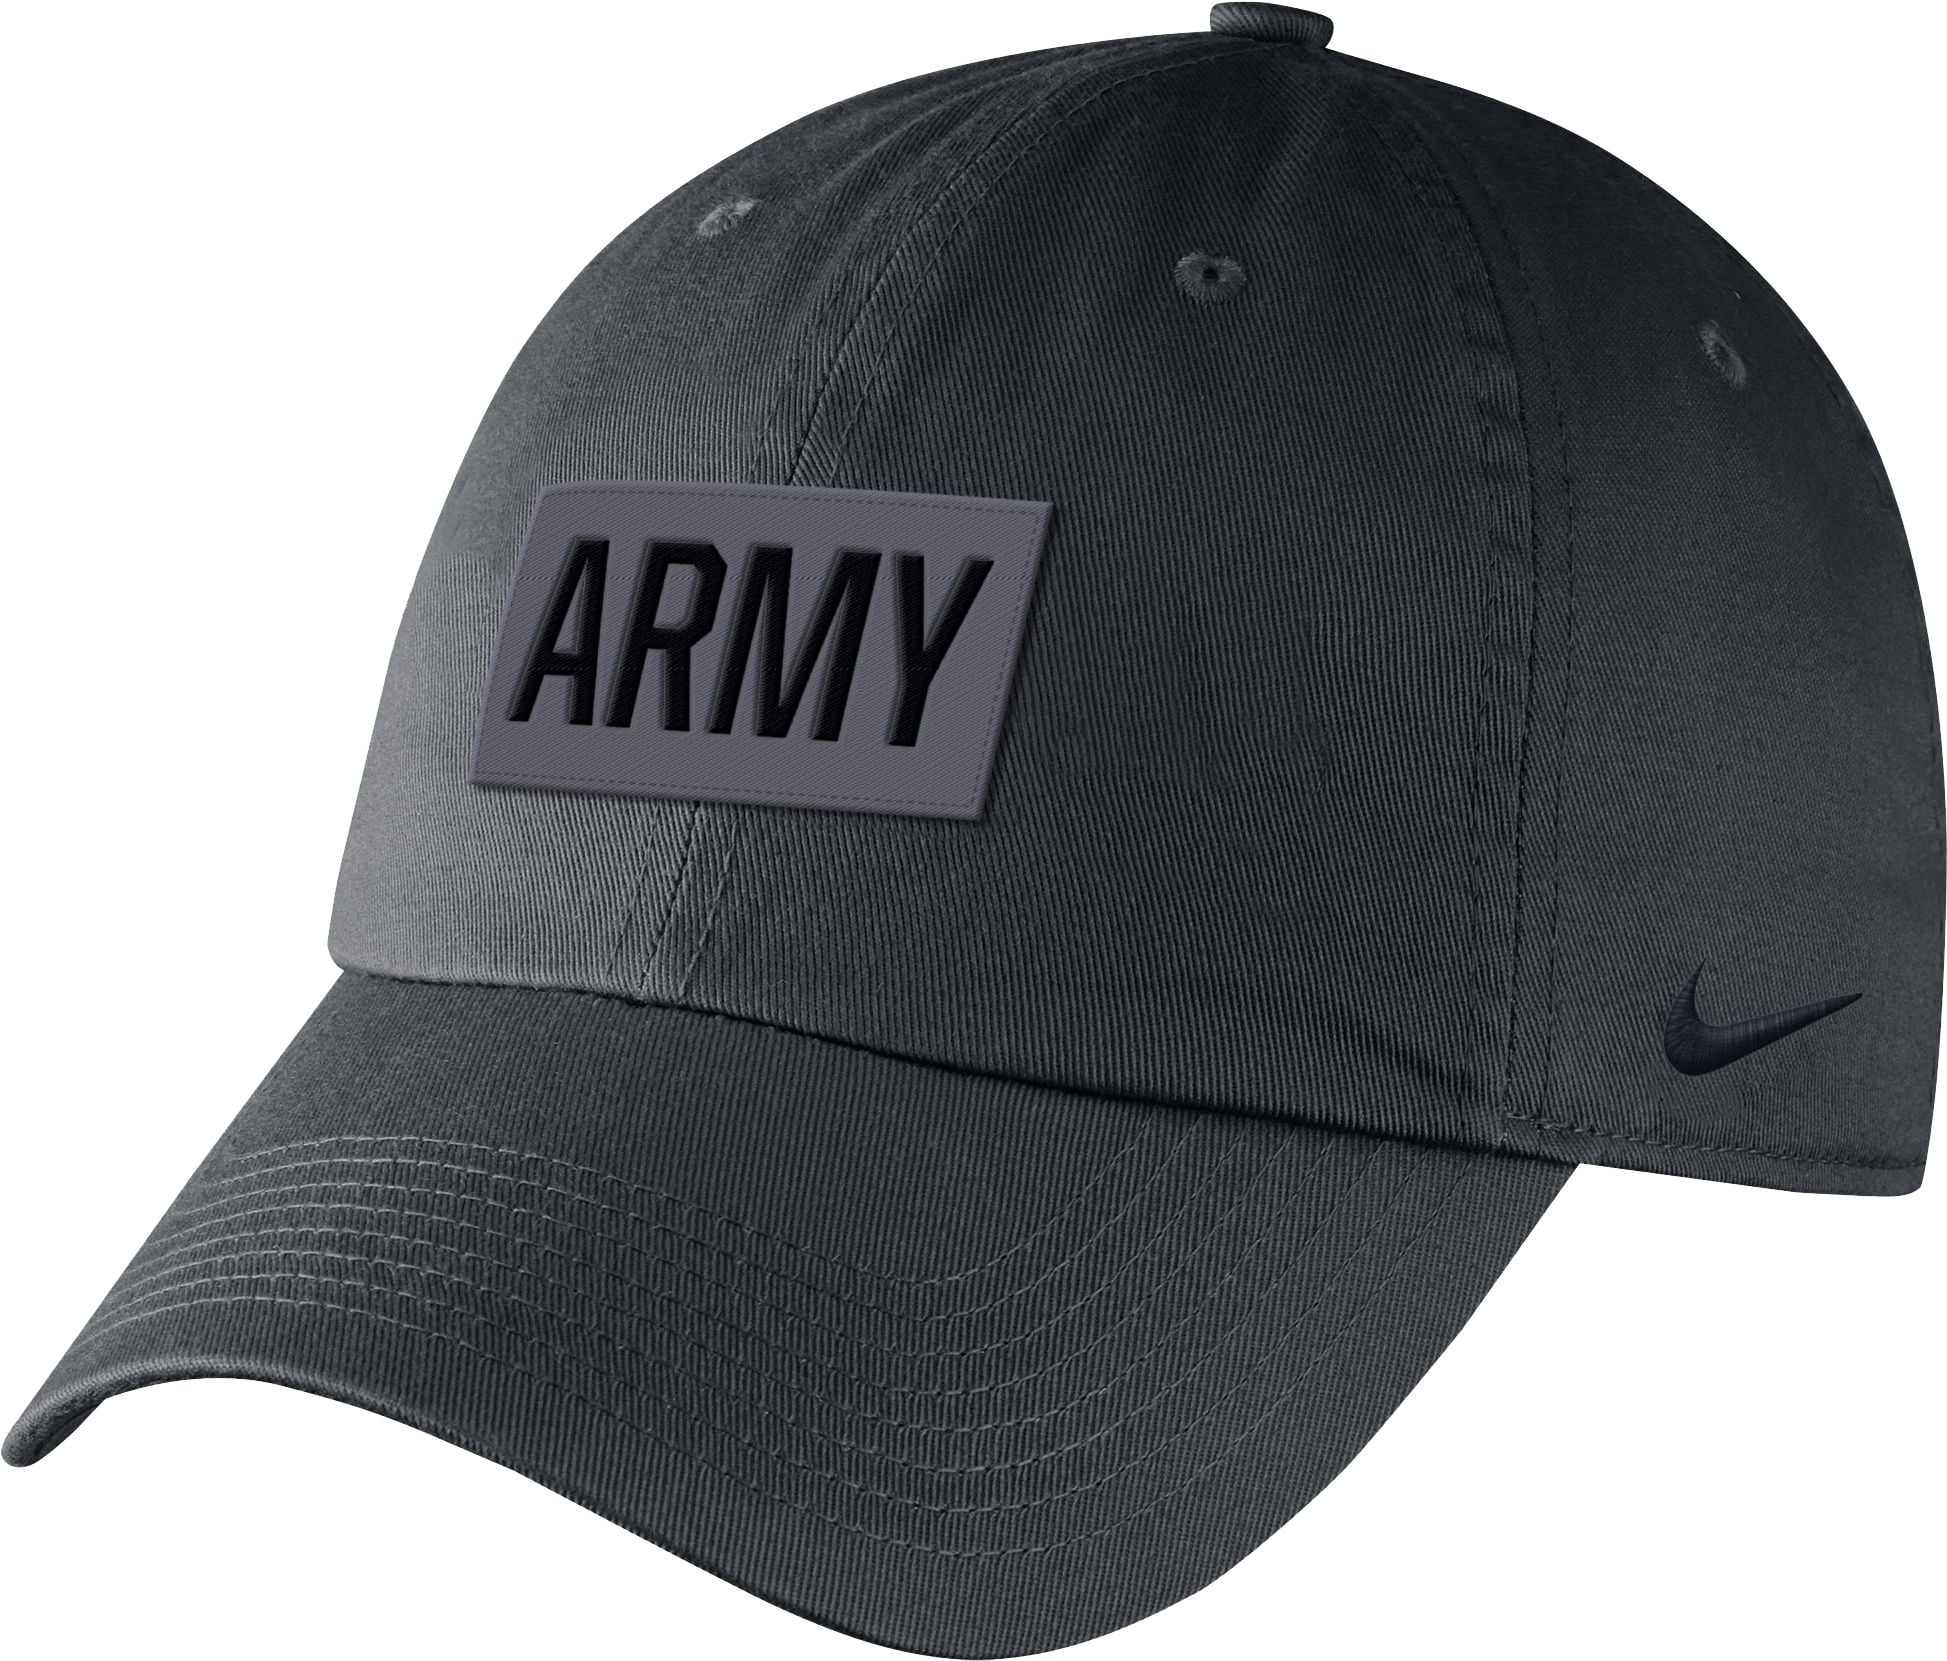 nike army hat